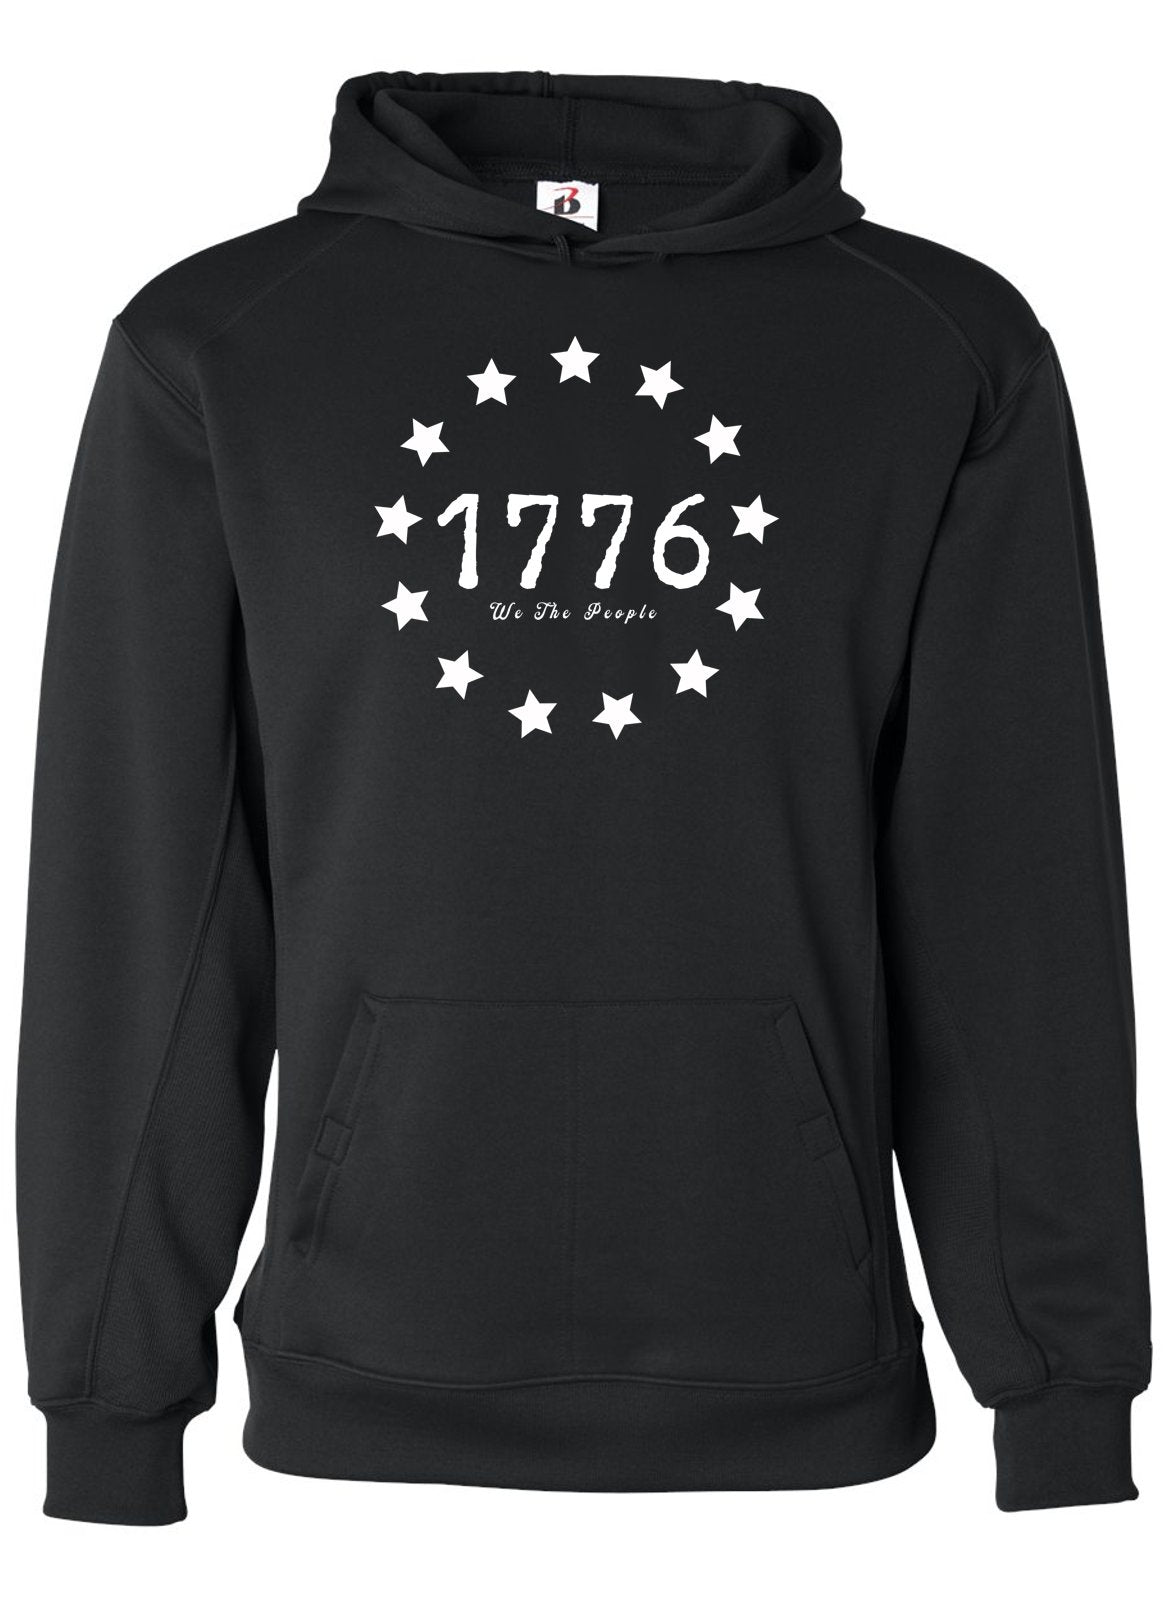 1776 13 Star Edition Hoodie | Patriotic Apparel for American Patriots -